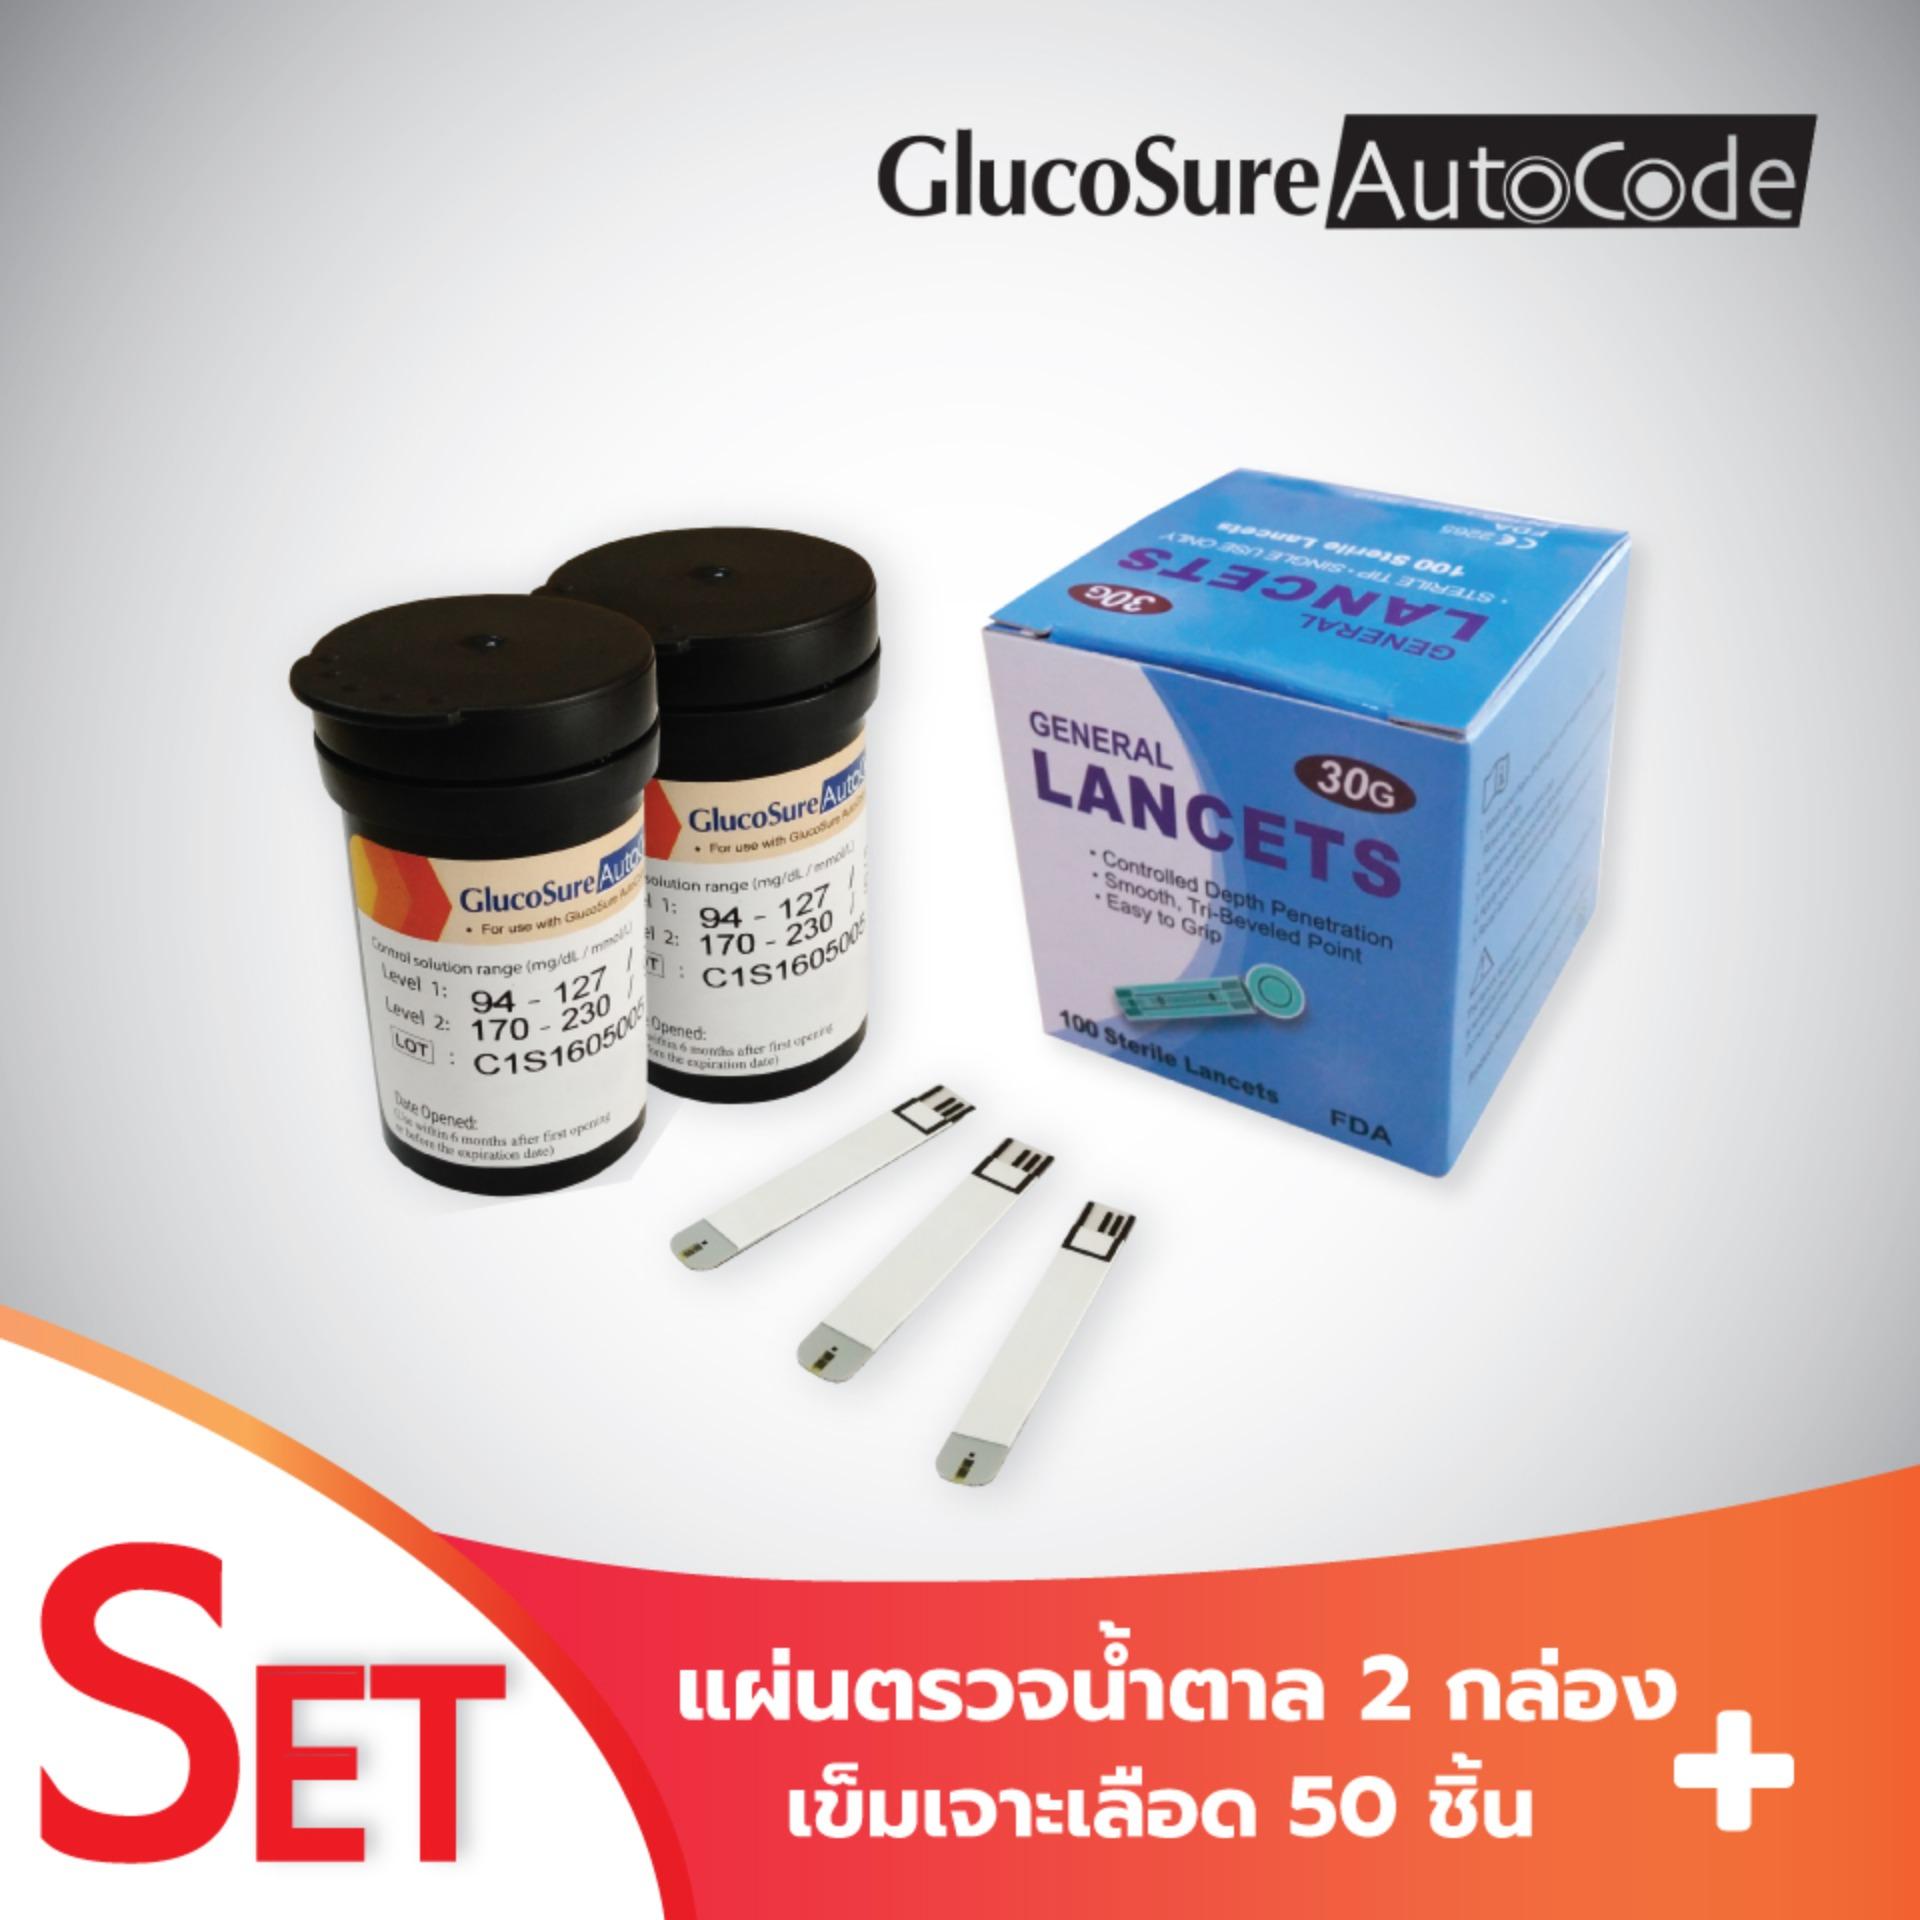 Glucosure Autocode Test Strip แผ่นตรวจน้ำตาลในเลือด 2 กล่อง (25 ชิ้น/กล่อง) + เข็มเจาะเลือด 50 ชิ้น